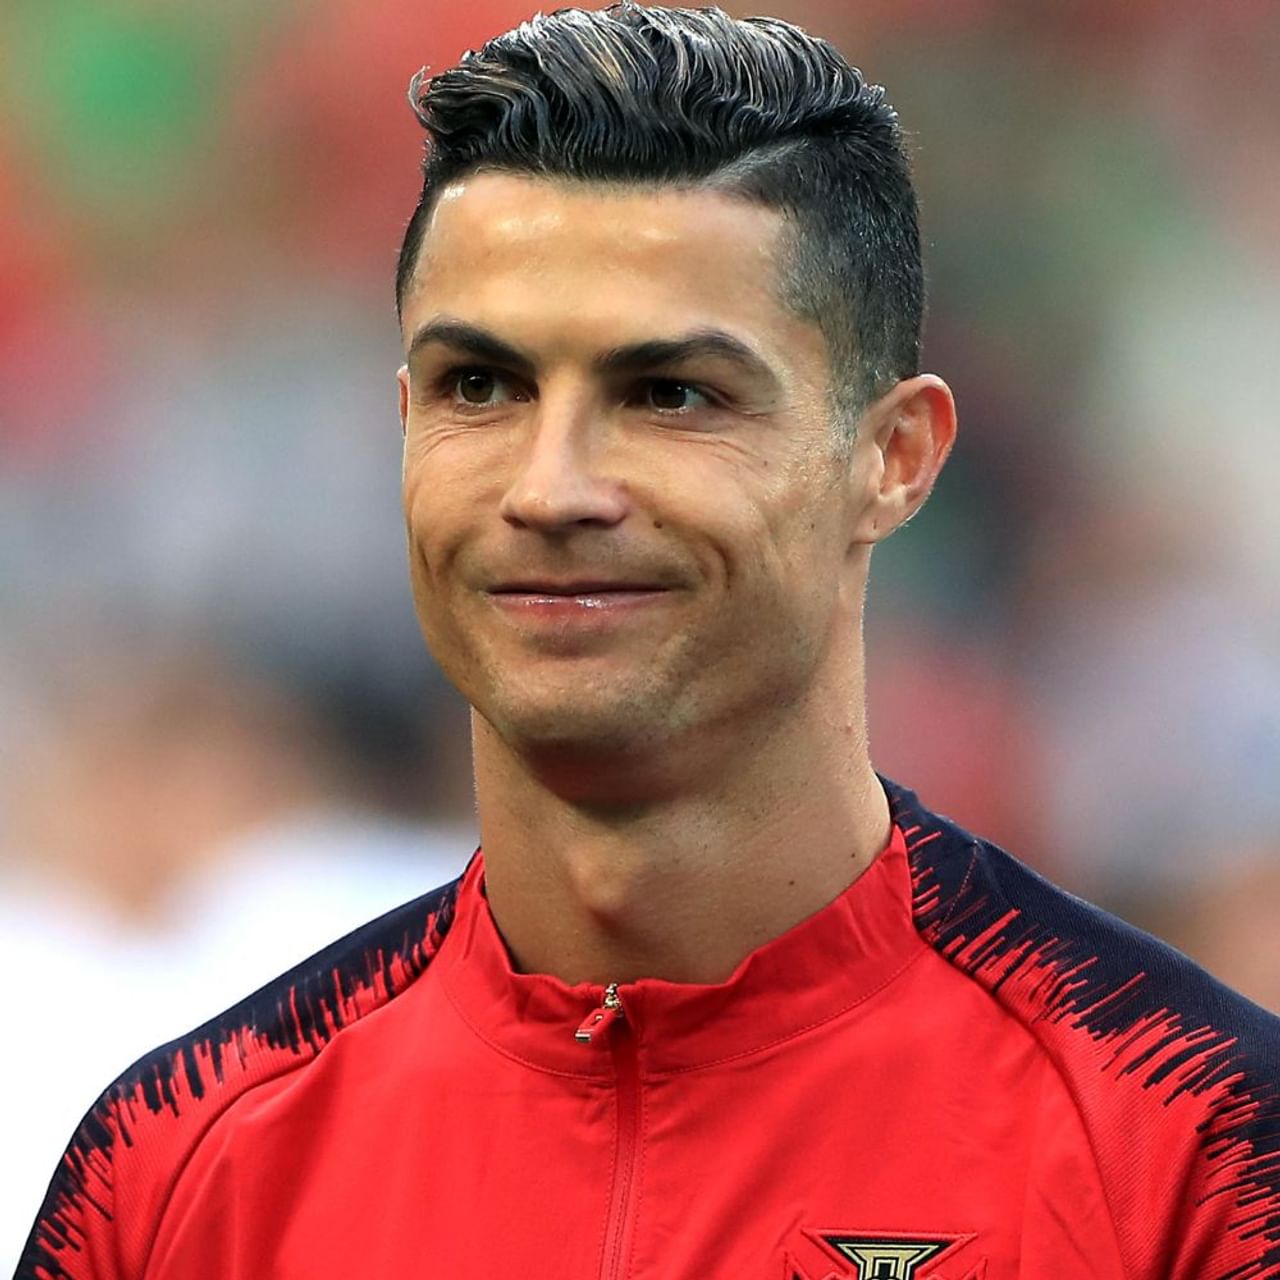 ক্রিশ্চিয়ানো রোনাল্ডো (Cristiano Ronaldo) বিশ্ব ফুটবলের আইকন। তিনি সর্বকালের অন্যতম সেরা এবং বর্তমান প্রজন্মের এক সেরা ফুটবলার। সদ্য ৩৮-এ পা দিয়েছেন পর্তুগিজ তারকা রোনাল্ডো। (ছবি-ক্রিশ্চিয়ানো রোনাল্ডো ইন্সটাগ্রাম)